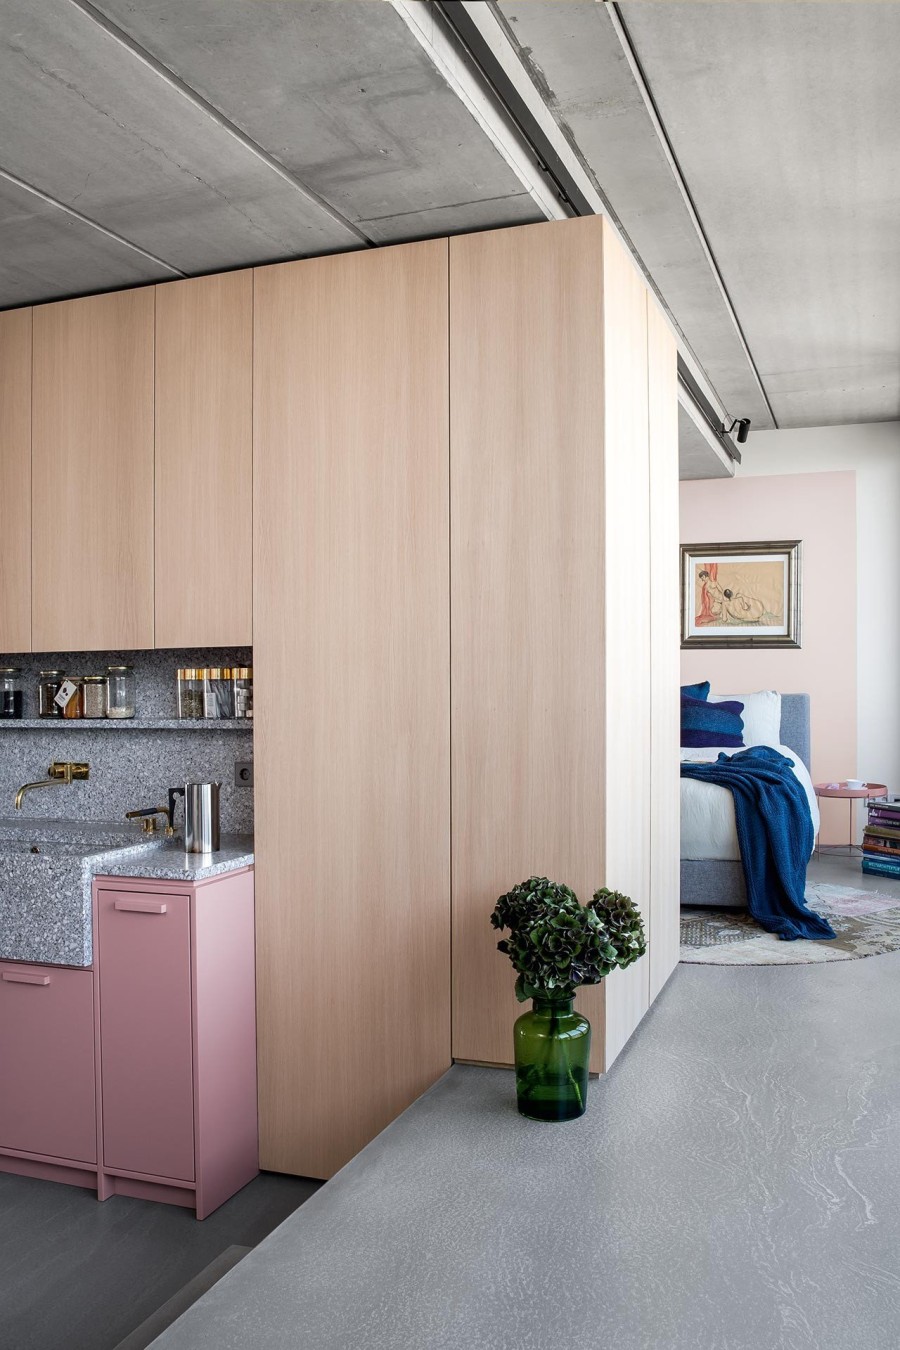 Ένα γοητευτικό μπουκέτο αντιπαραθέσεων στο διαμέρισμα της interior designer, Ester Bruzkus, στο Βερολίνο- Φωτογραφία 6